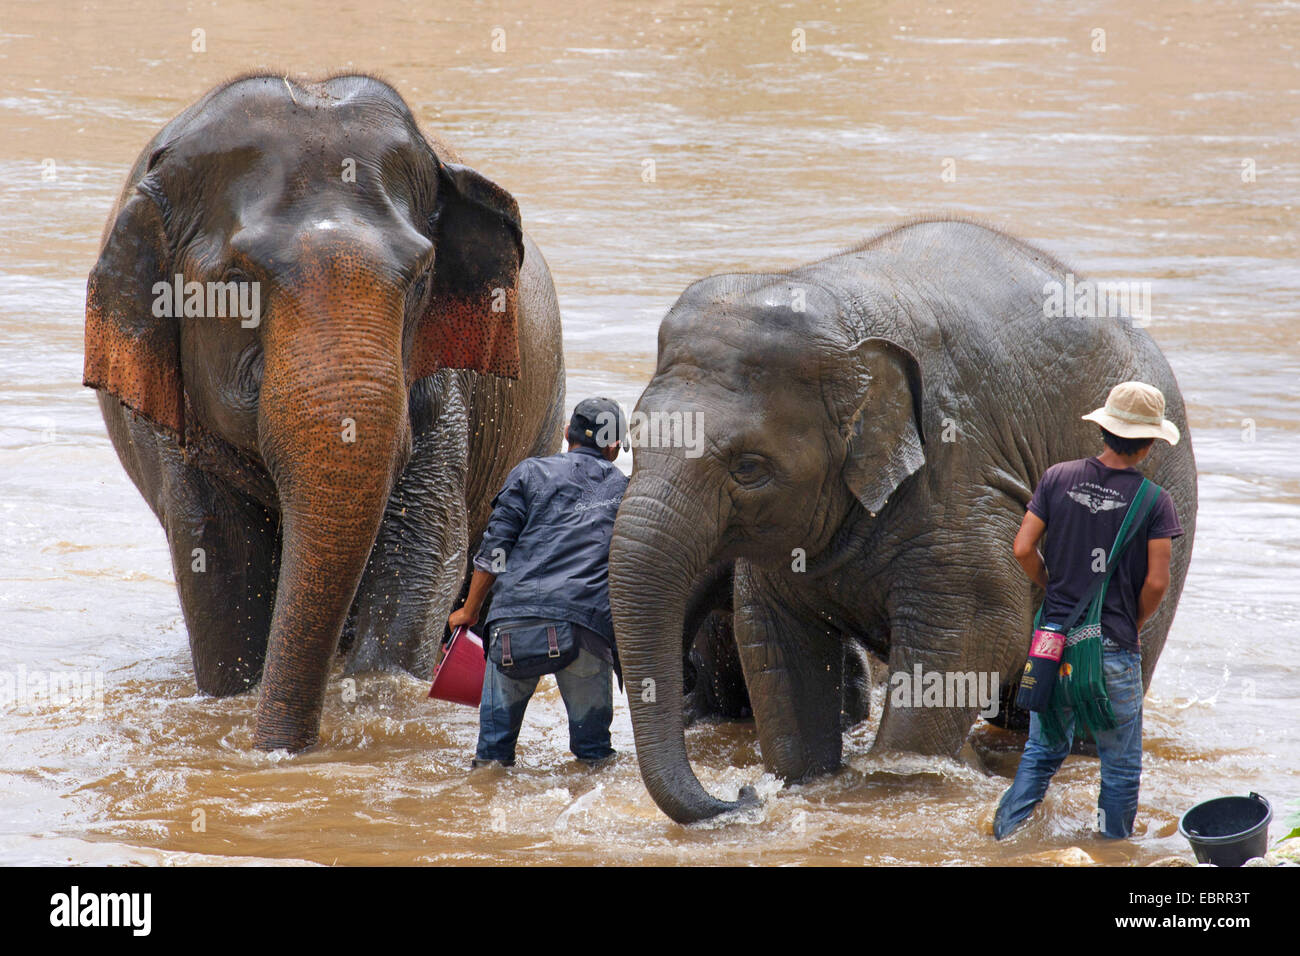 L'éléphant d'Asie, l'éléphant d'Asie (Elephas maximus), baignade dans une rivière avec des cornacs, Thaïlande, Elephant Nature Park, Chiang Mai Banque D'Images